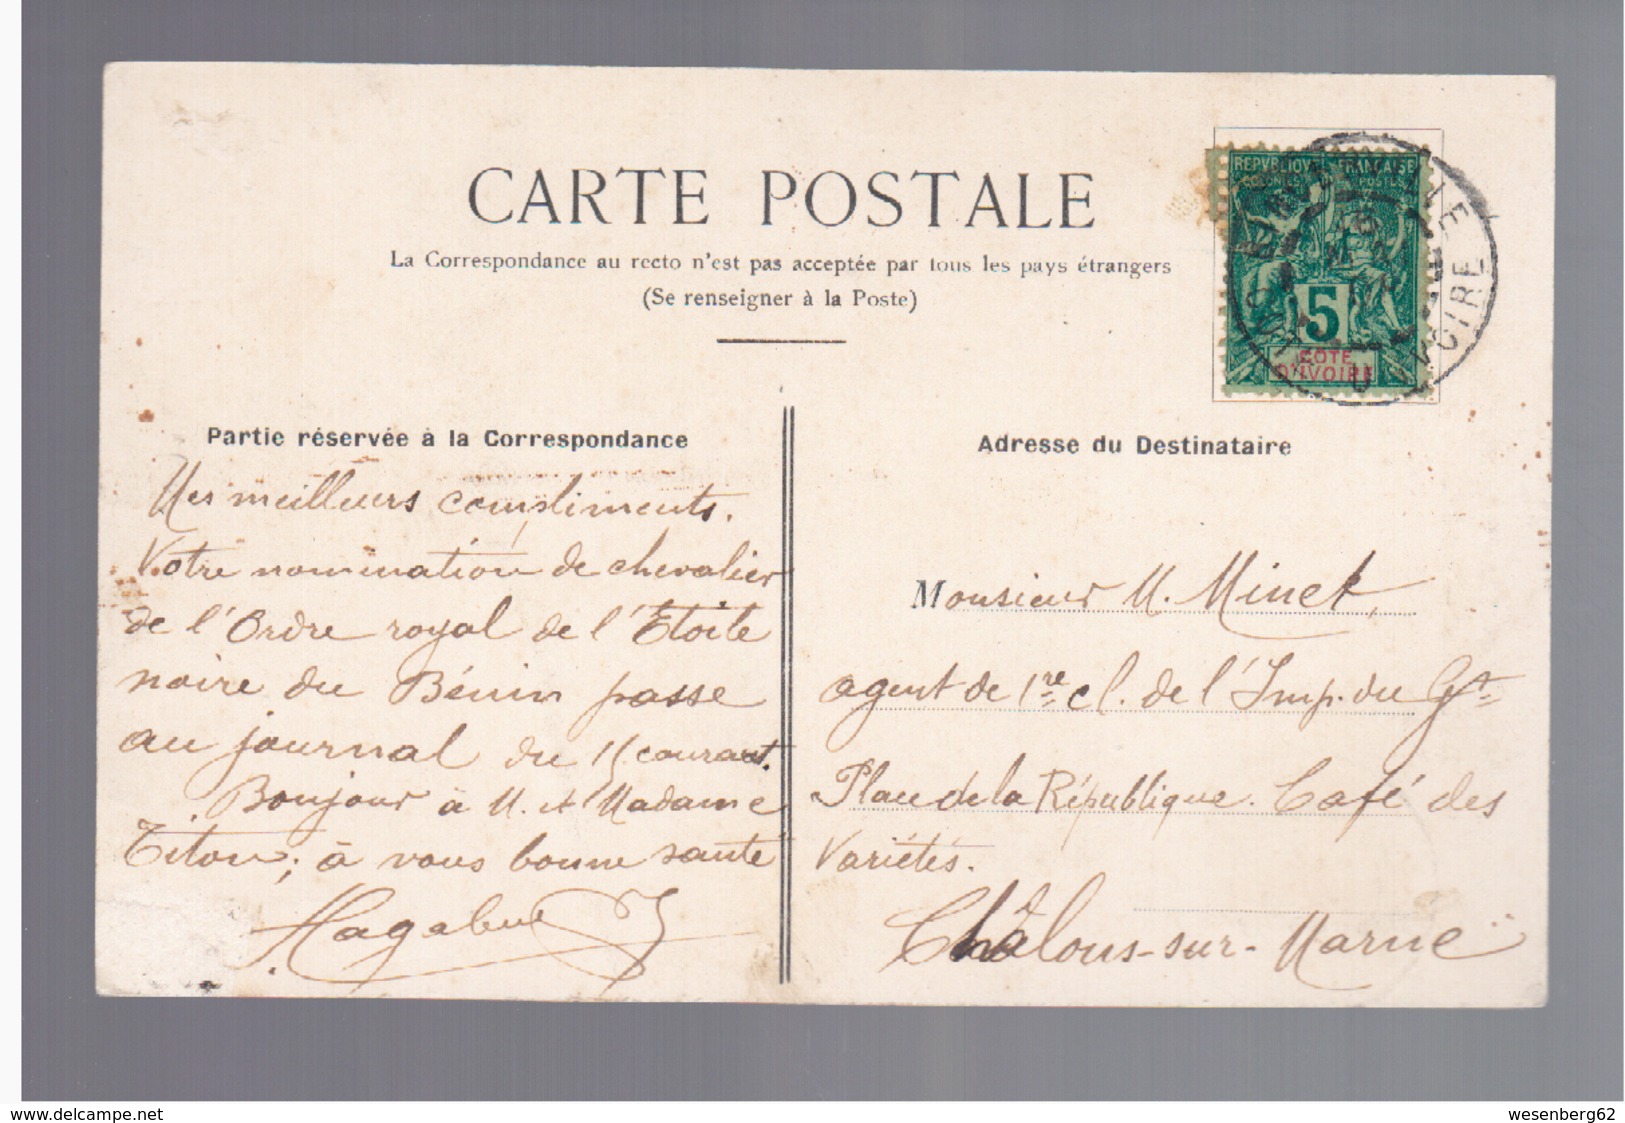 Cote D'Ivoire Au Baoule Dans La Brousse Ca 1910 OLD POSTCARD - Côte-d'Ivoire